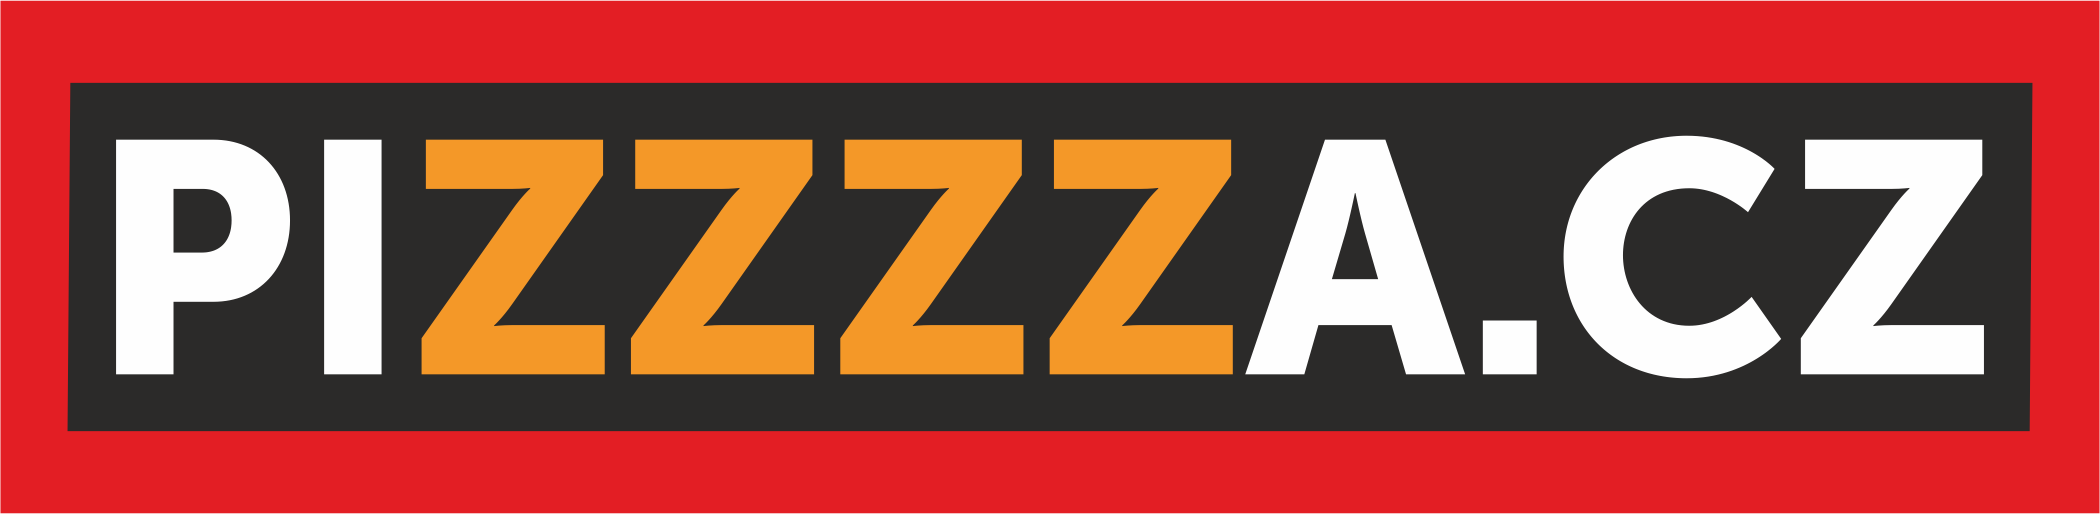 logo_pizzzza_black_red